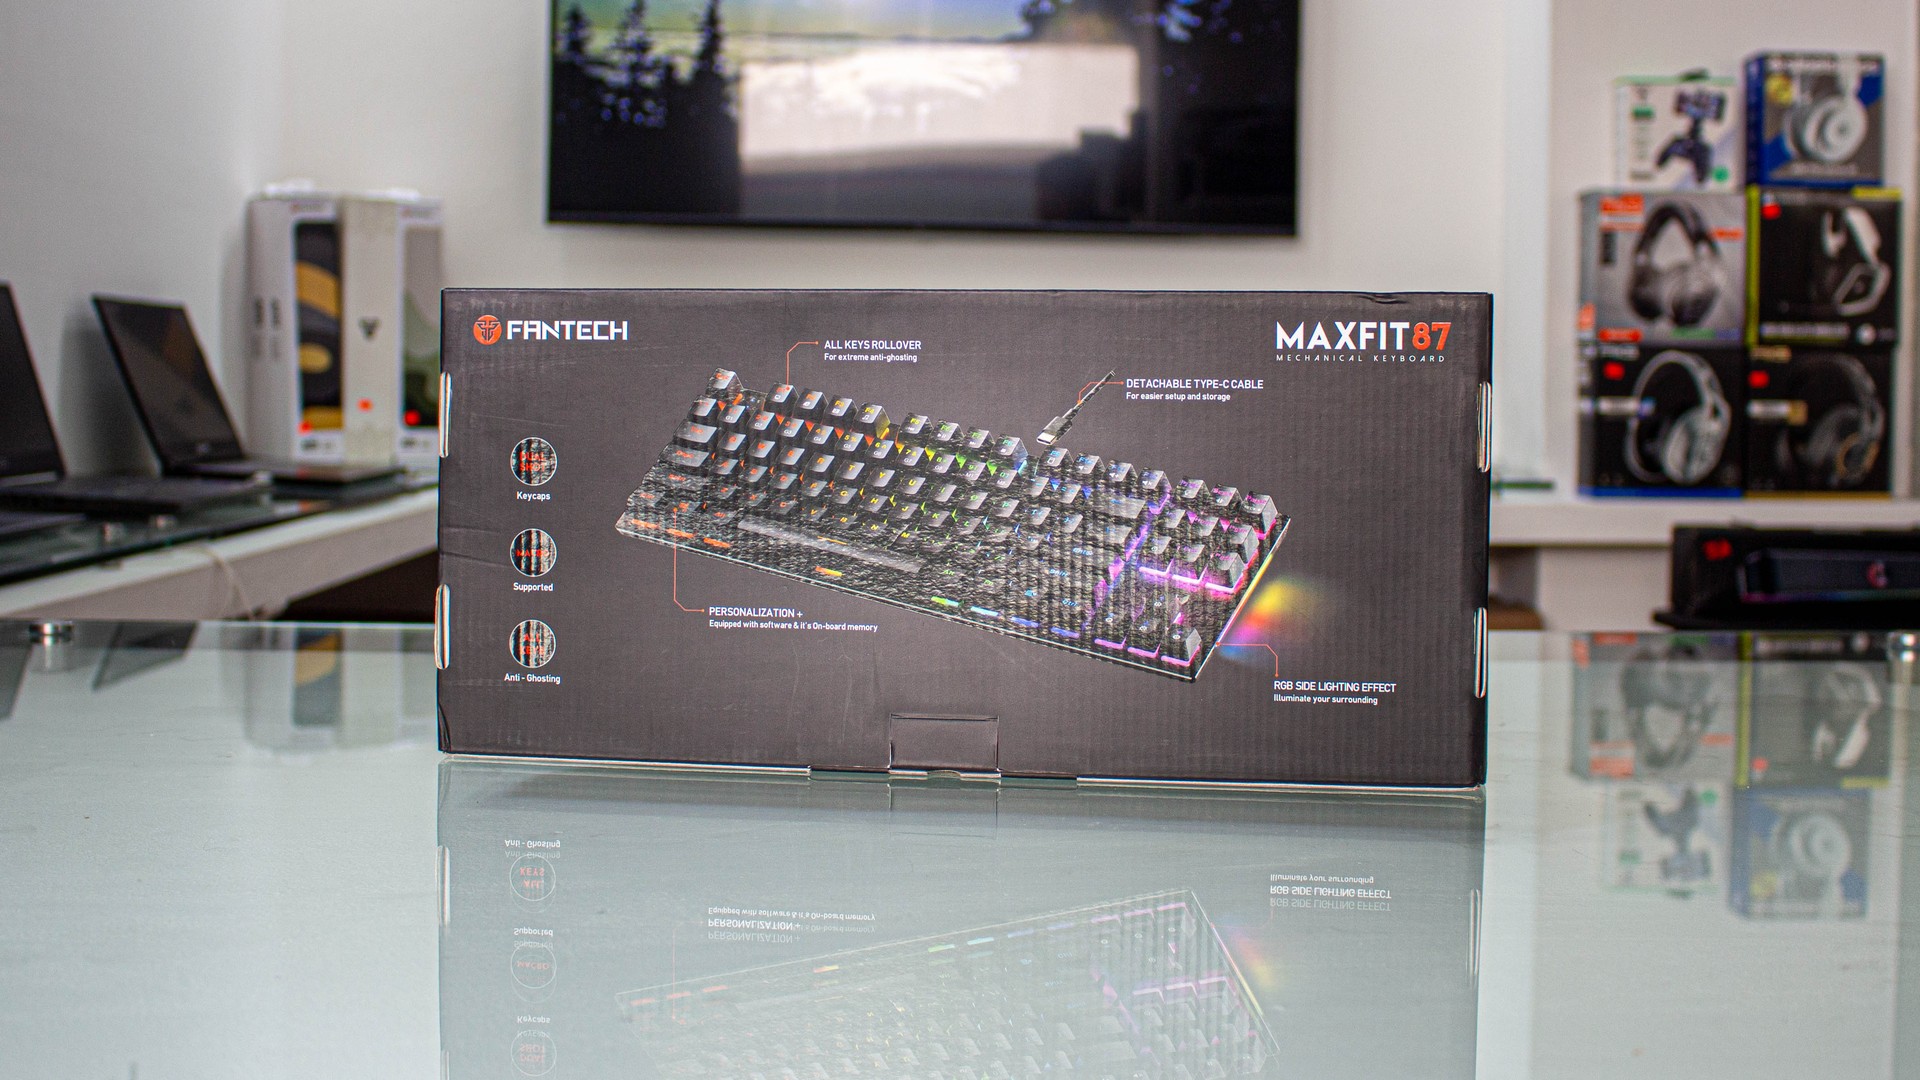 computadoras y laptops - Teclado Fantech MK856 MaxFit 87 1